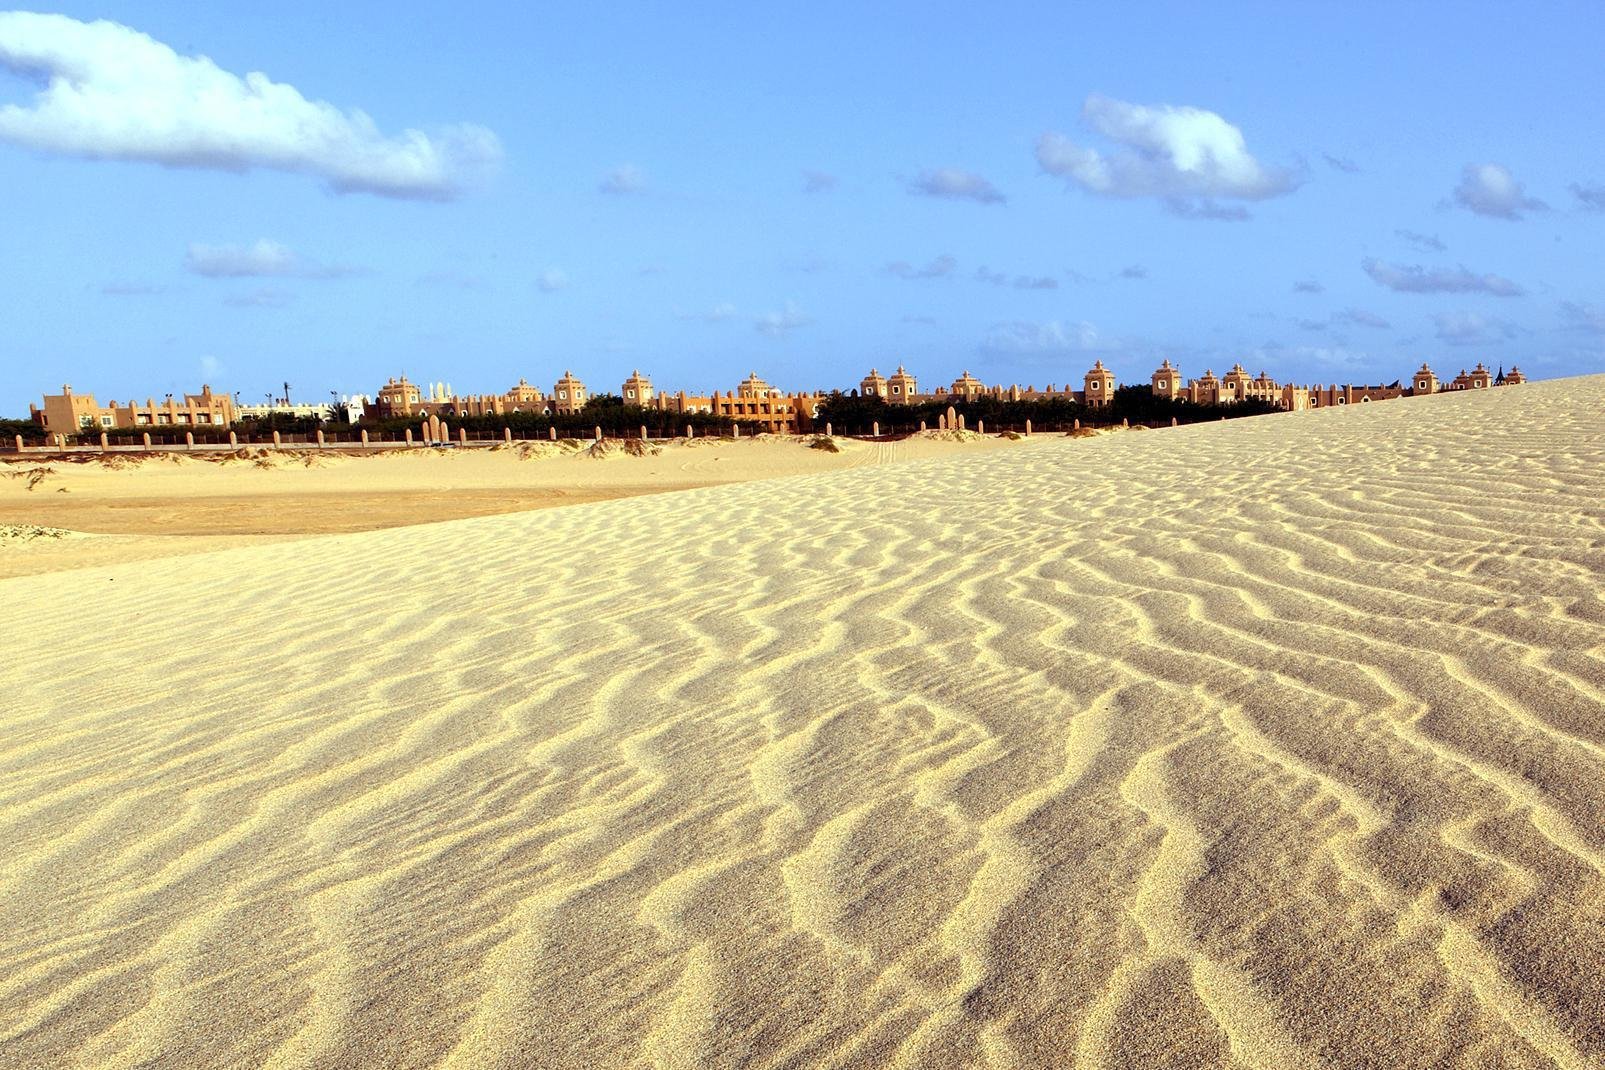 Sal ist aufgrund des internationalen Flughafens die bekannteste Insel von Kap Verde. Man kommt nicht wegen der Landschaft hierher - die Insel ist karg und durch 350 Sonnentage im Jahr durchaus trocken. Doch natürlich gibt es hier Ecken, die zum Träumen einladen: Während der Norden eher von Lava-Felsküsten gekennzeichnet ist, besticht der Süden mit kilometerlangen, feinen Sandstränden und hellen Dünen, ...